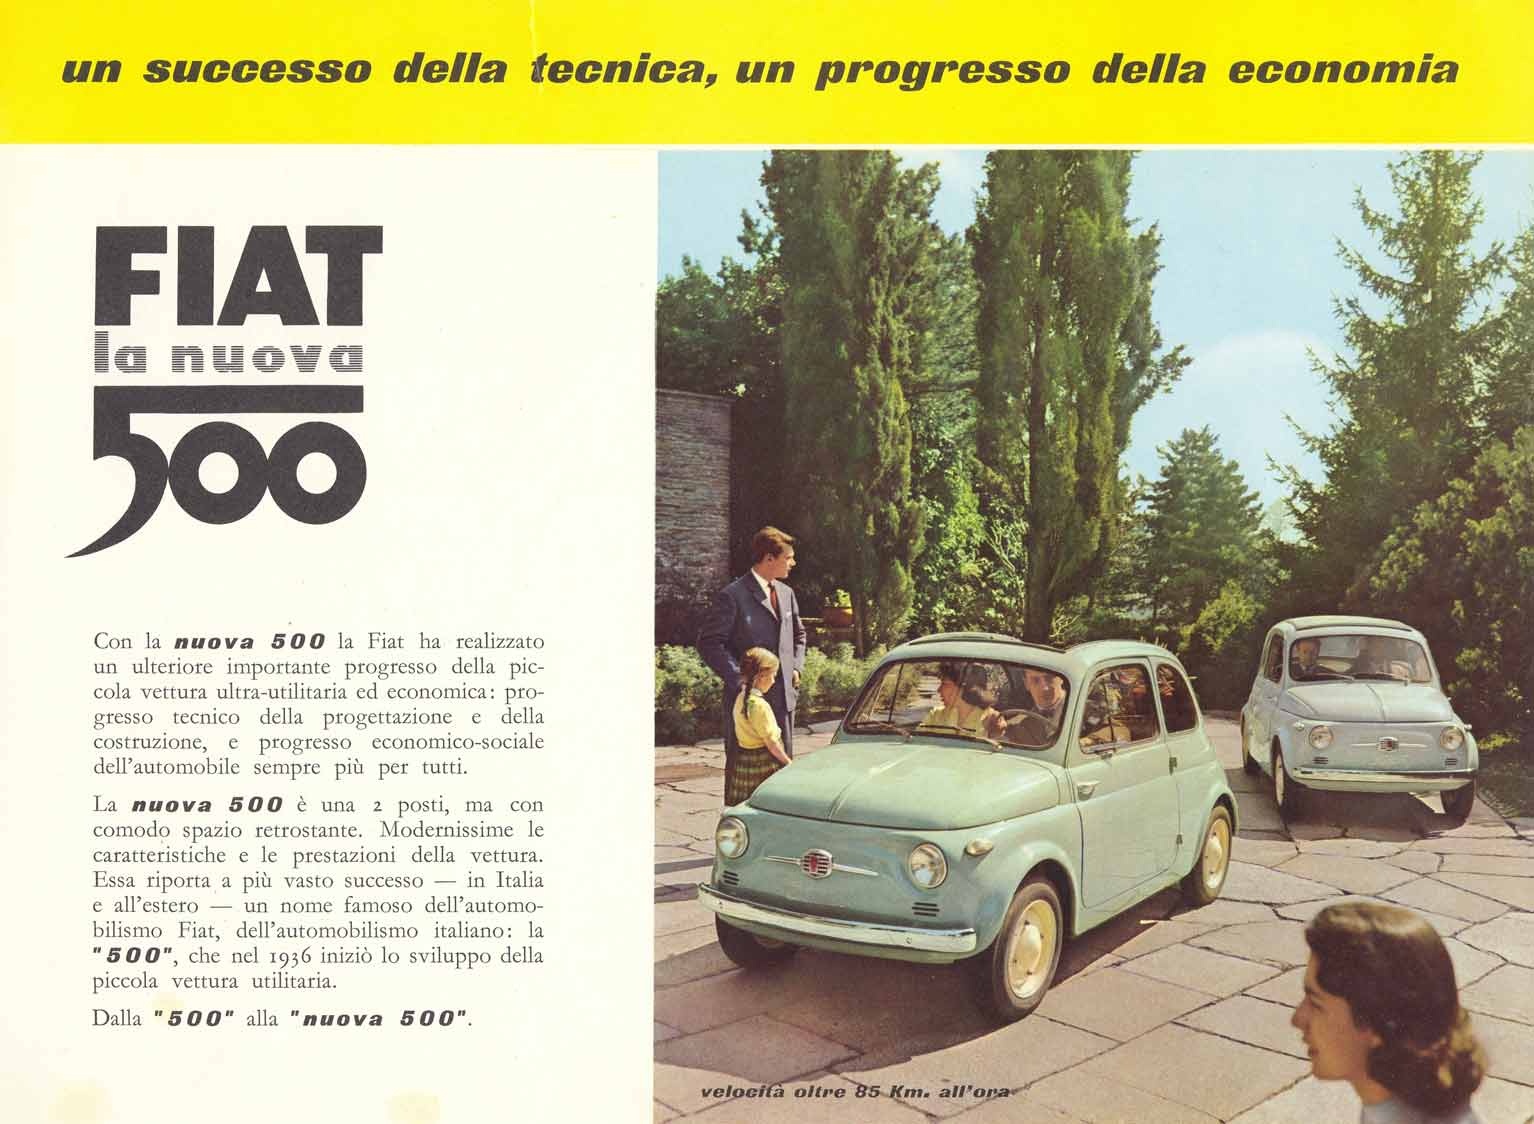 Fiat history